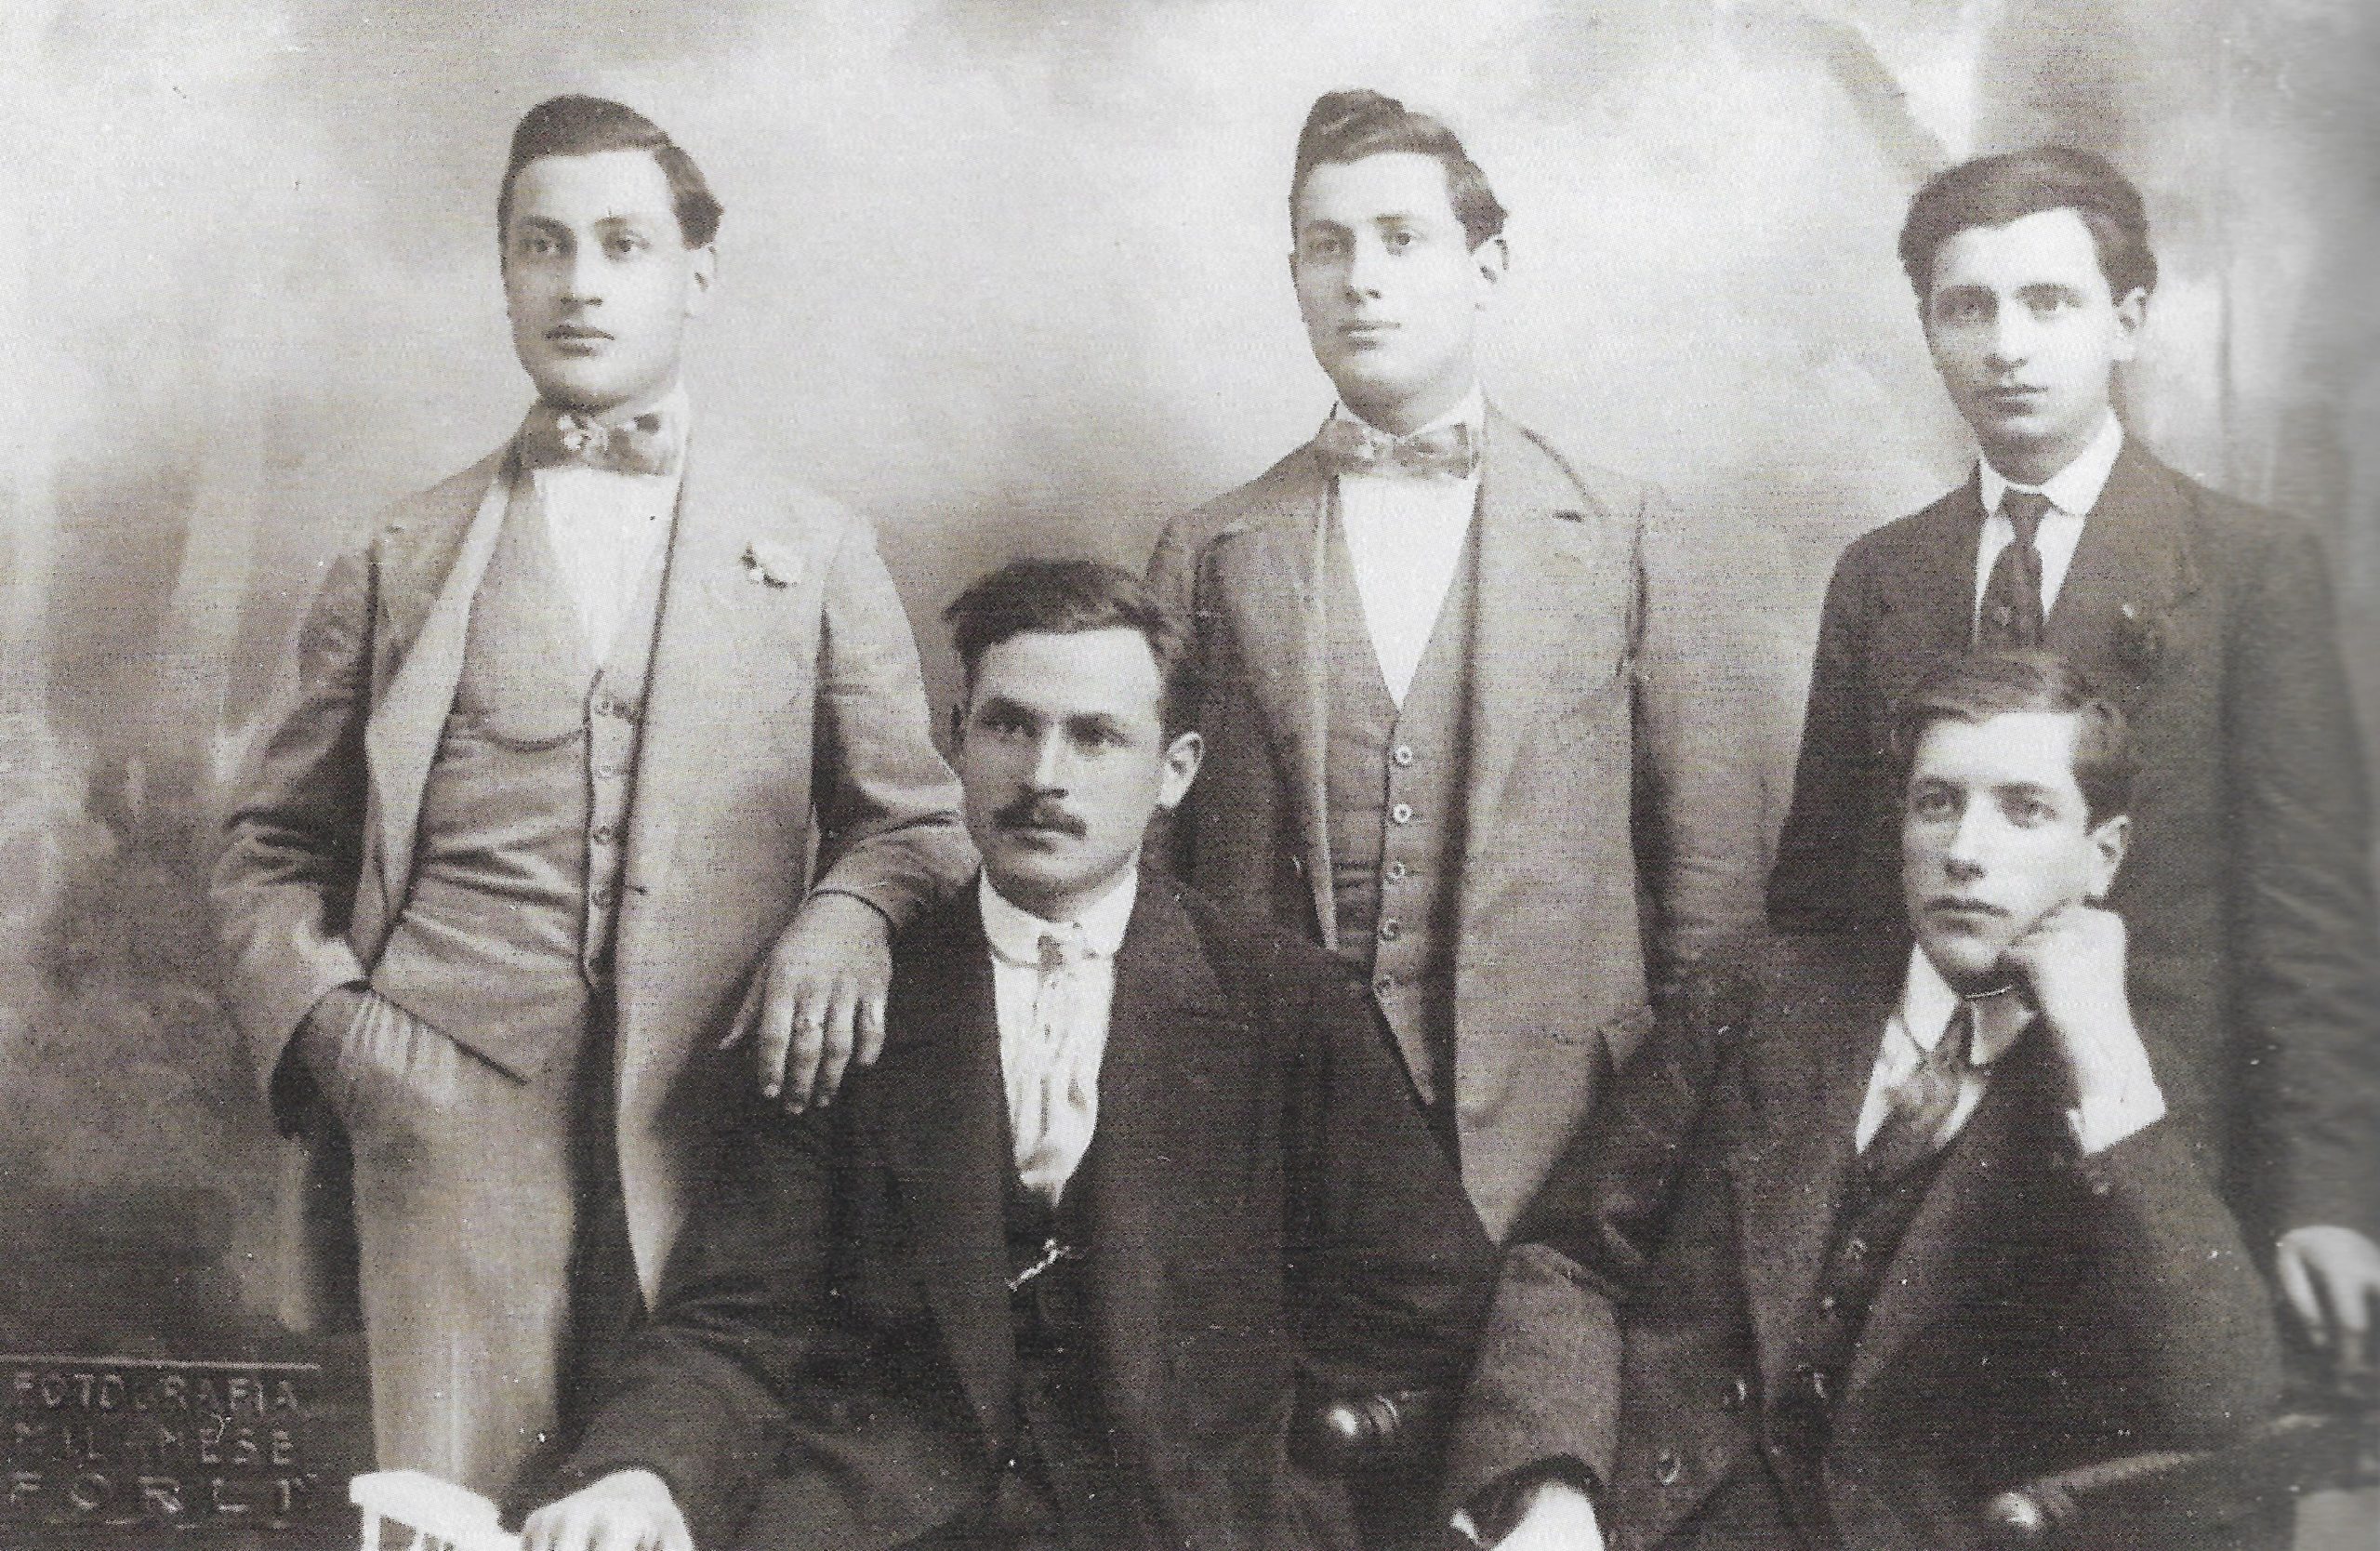 Ritratto fotografico con, riconoscibili sul lato destro, Mario Santarelli, seduto, leader delle “Avanguardie repubblicane” e Antenore Colonelli esponente dell’interventismo di matrice mazziniana